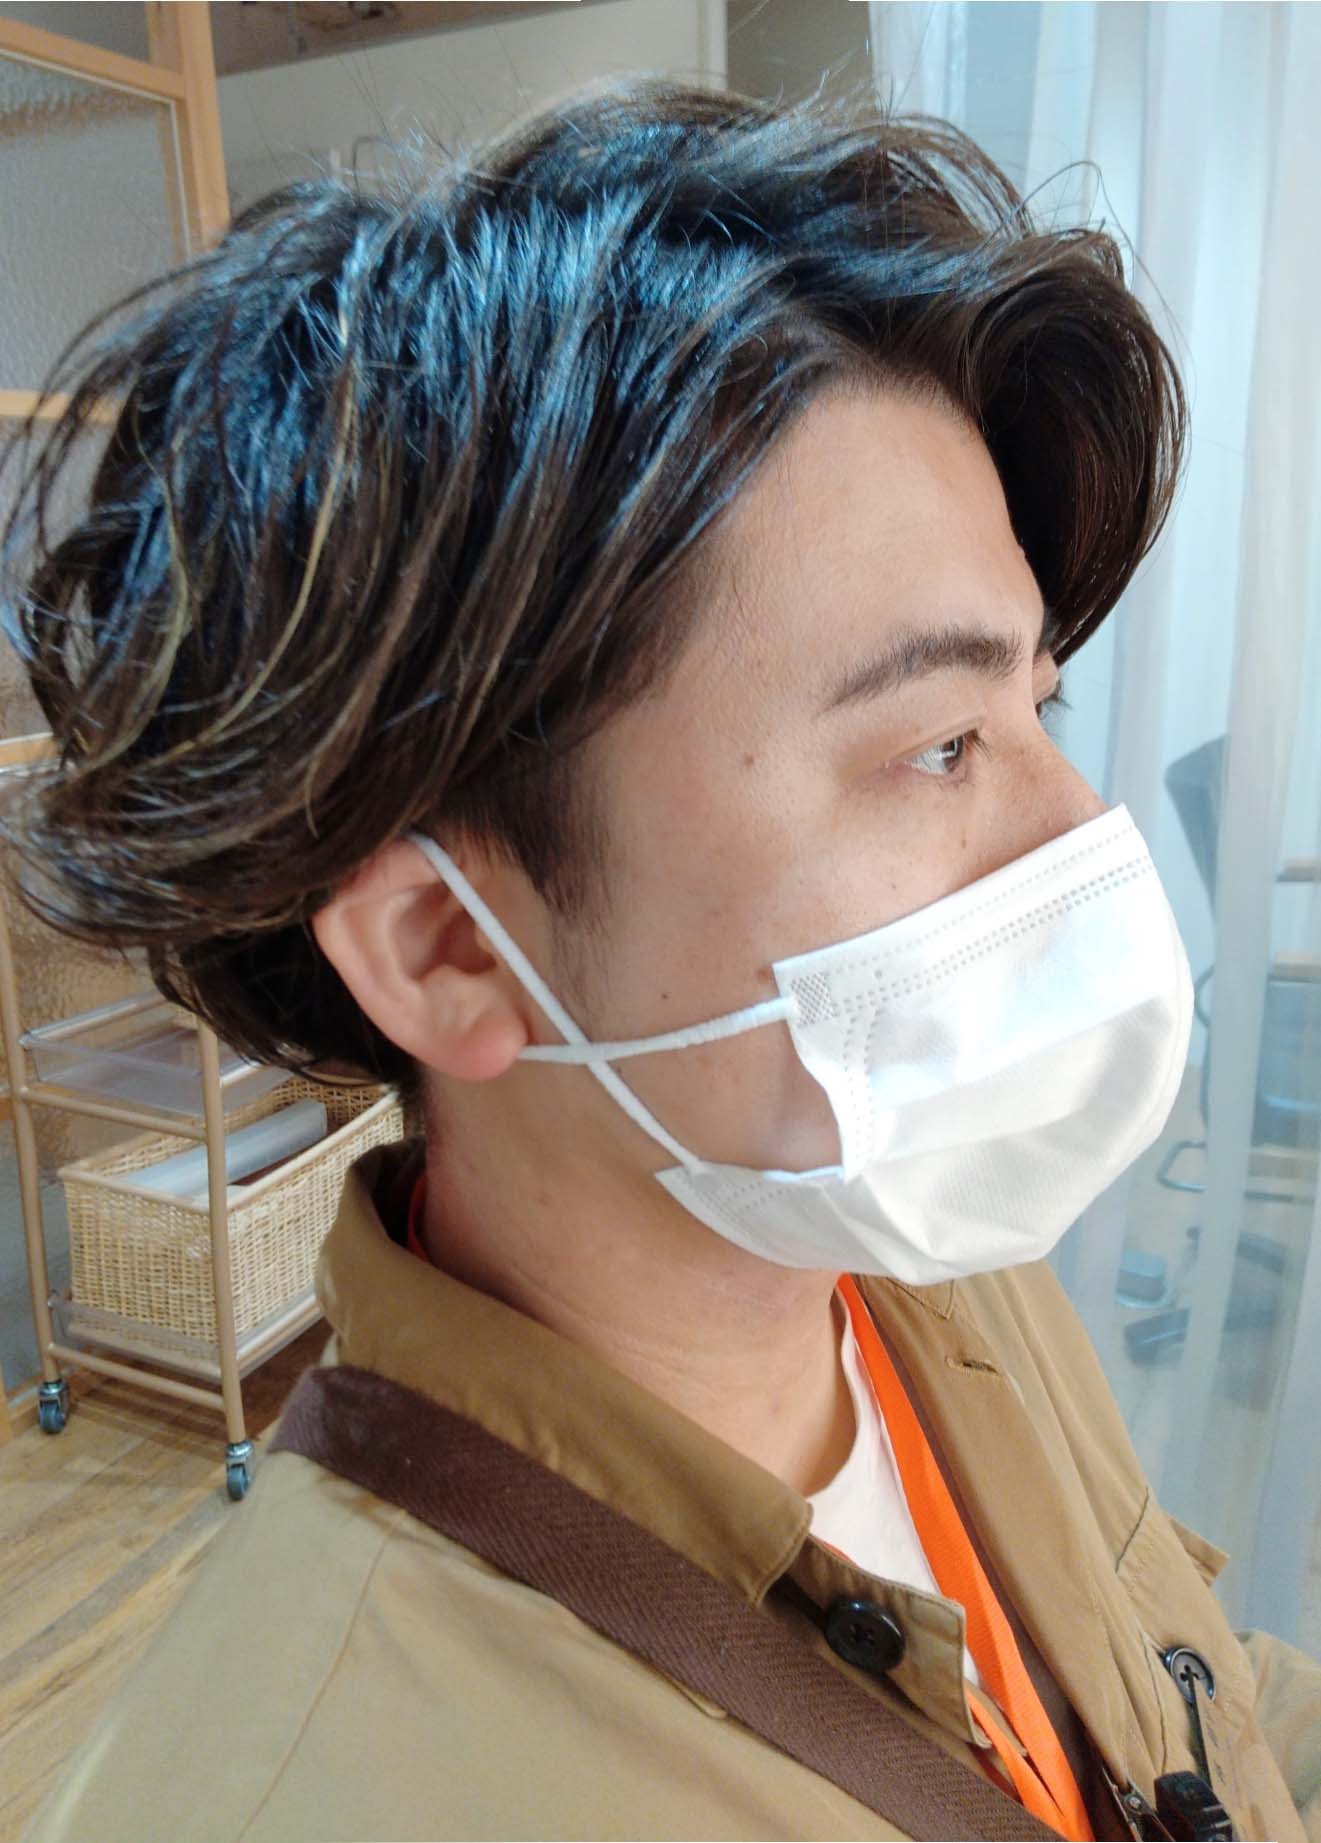 マスクをつけたままでも施術できます 神戸で人気の美容院パシフィックダズール公式webサイト 西区 垂水区